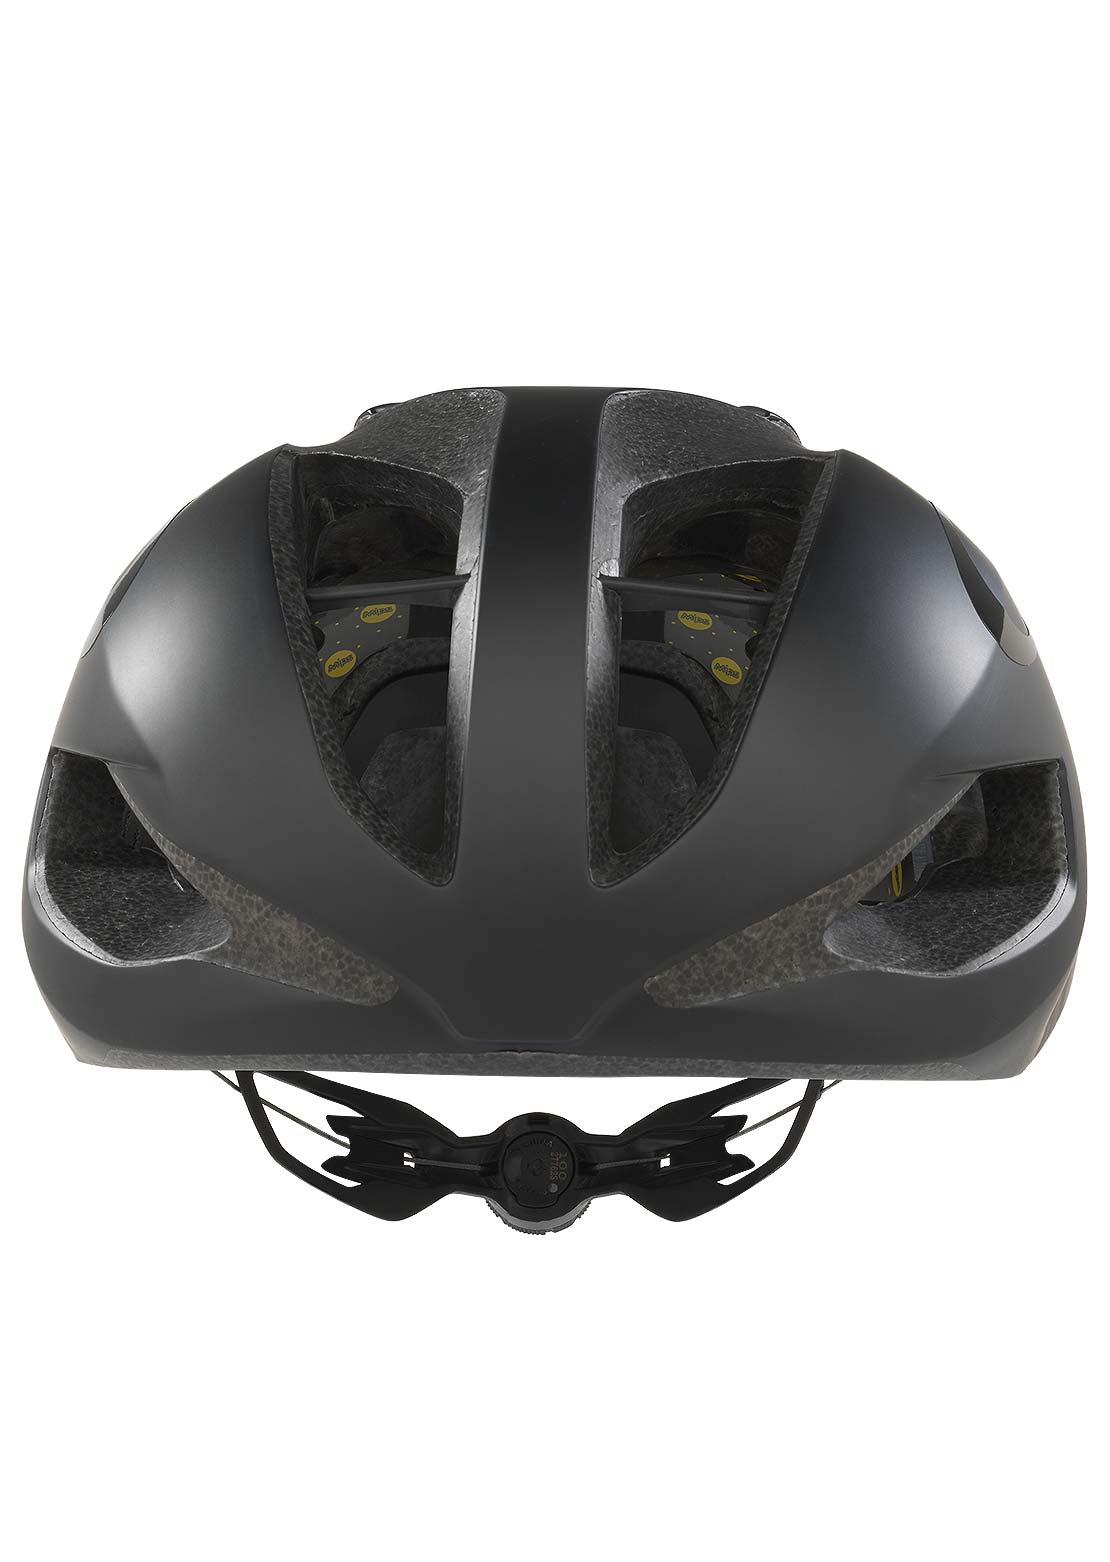 Oakley ARO 5 Mountain Bike Helmet Blackout